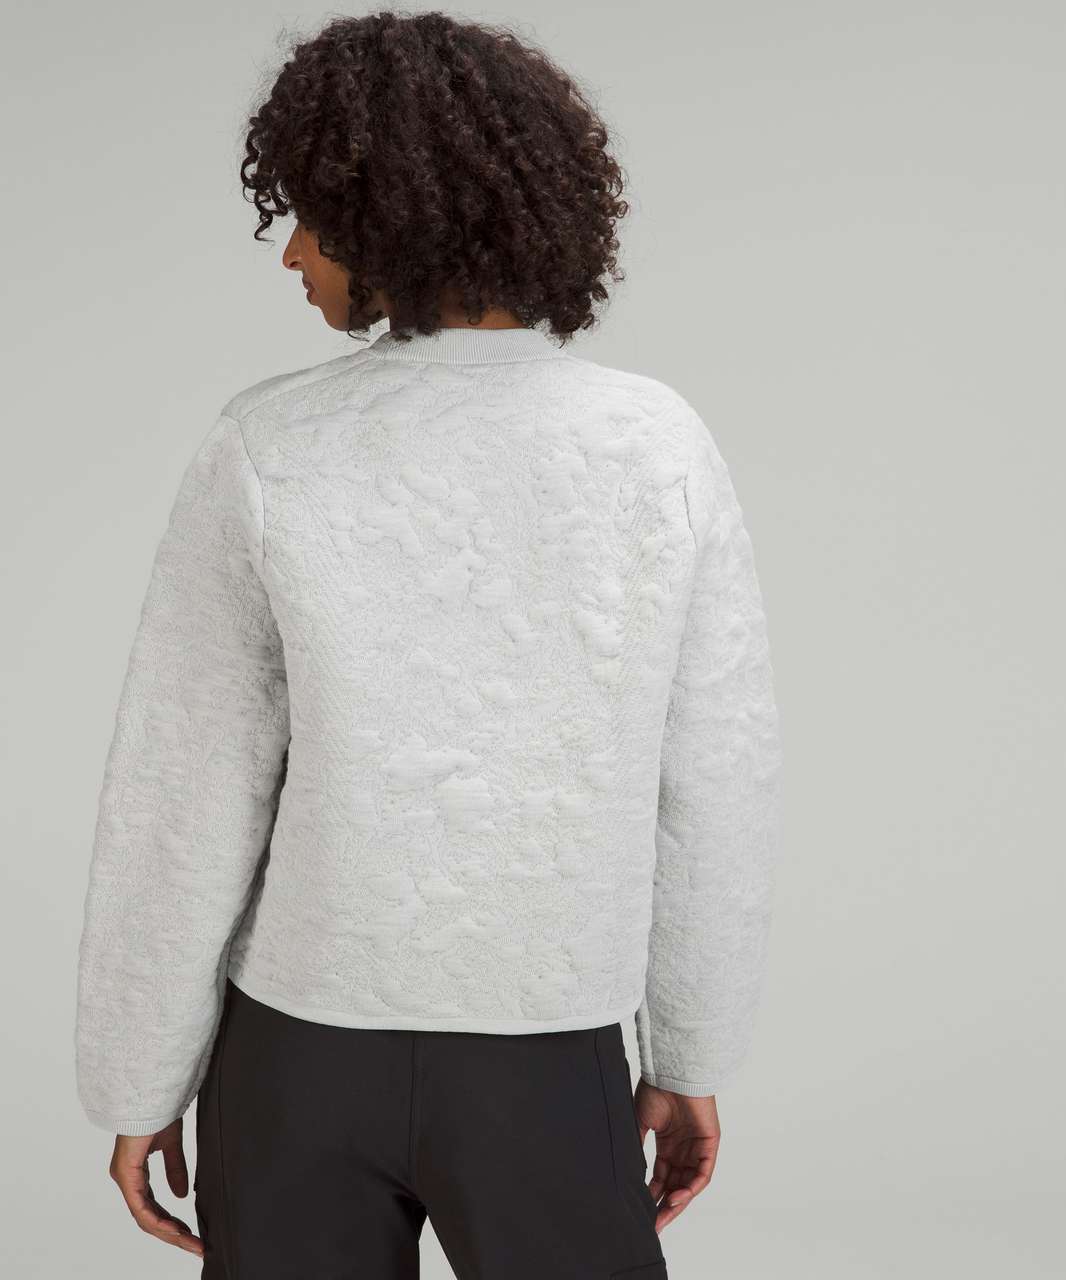 Jacquard Multi-Texture Crewneck Sweater